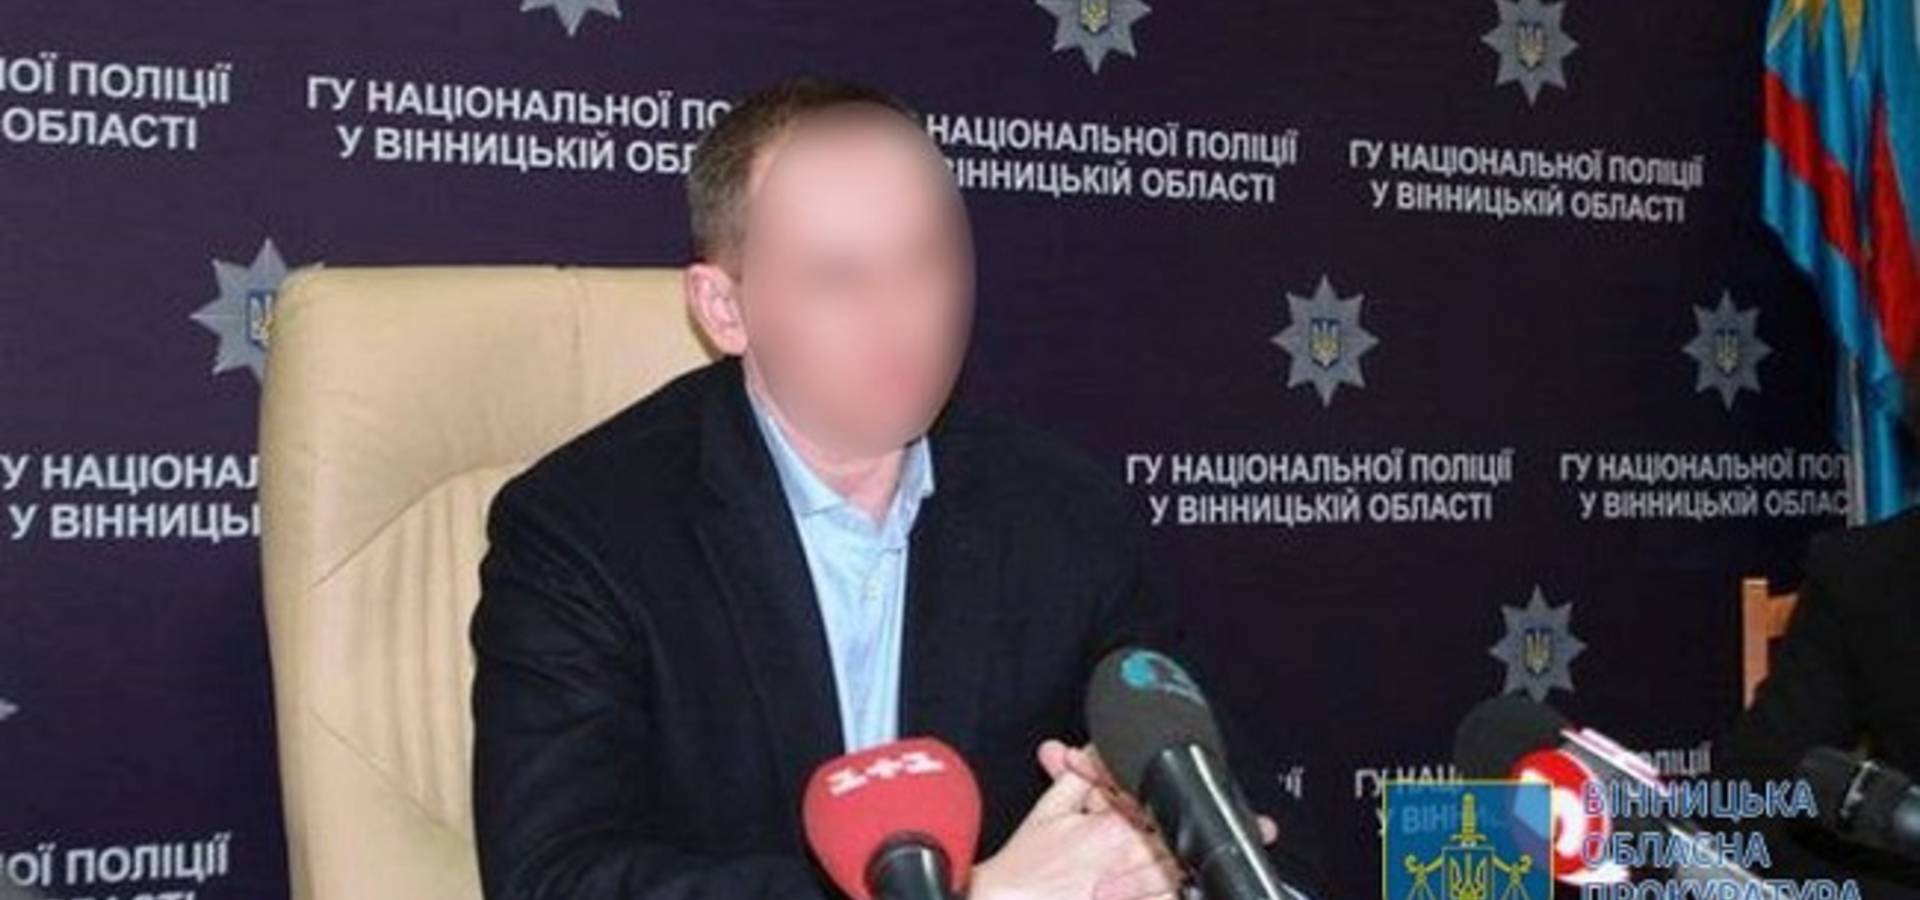 Колишній очільник поліції Вінниччини працював на фсб росії.  Він підозрюється у державній зраді